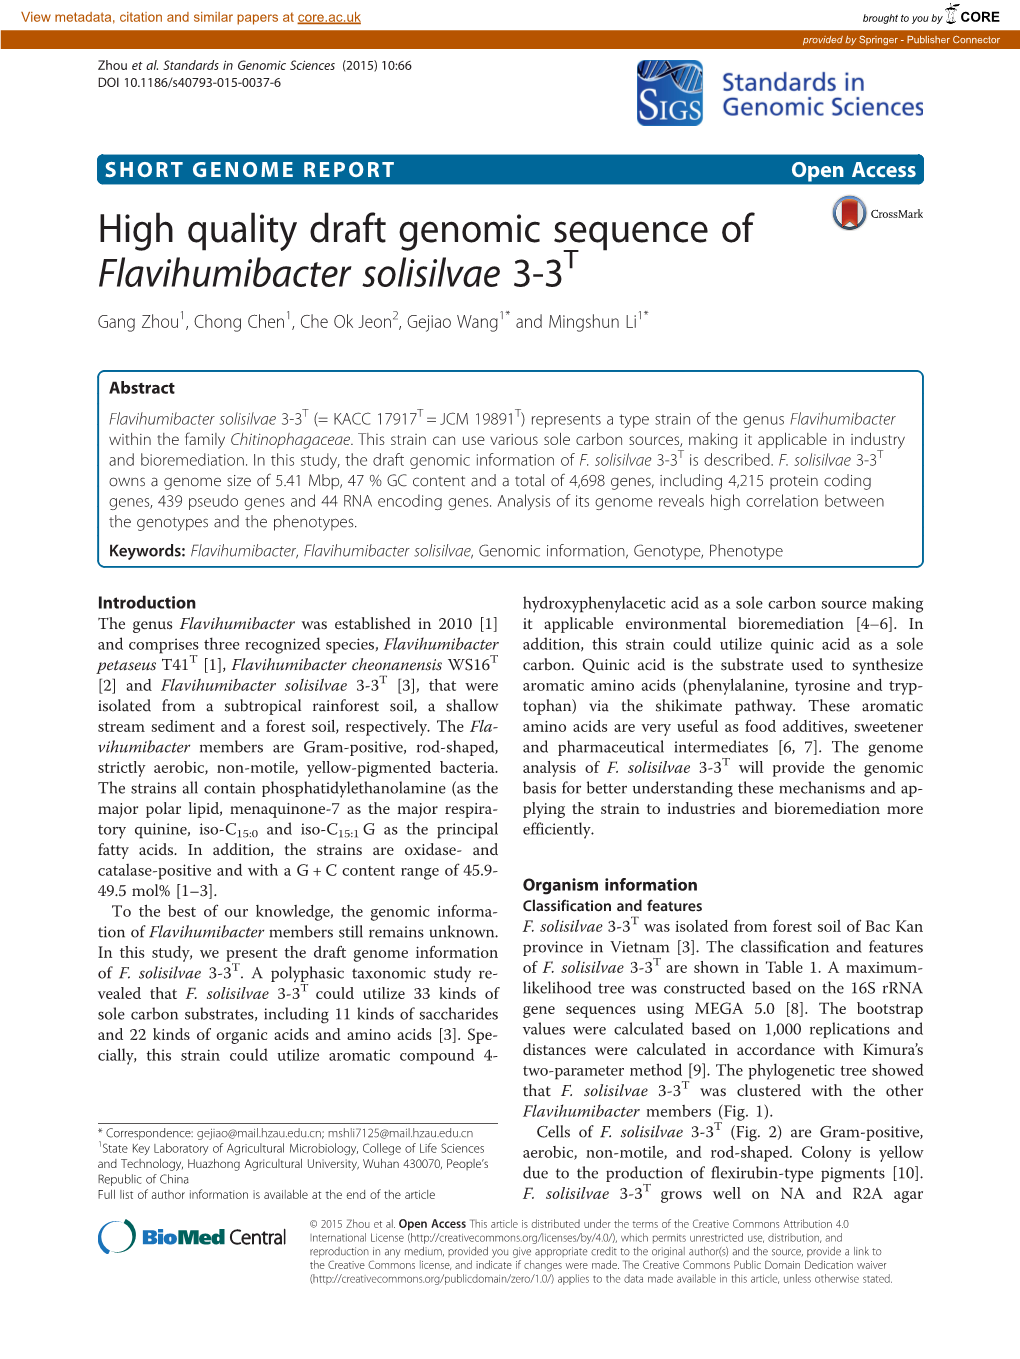 High Quality Draft Genomic Sequence of Flavihumibacter Solisilvae 3-3T Gang Zhou1, Chong Chen1, Che Ok Jeon2, Gejiao Wang1* and Mingshun Li1*